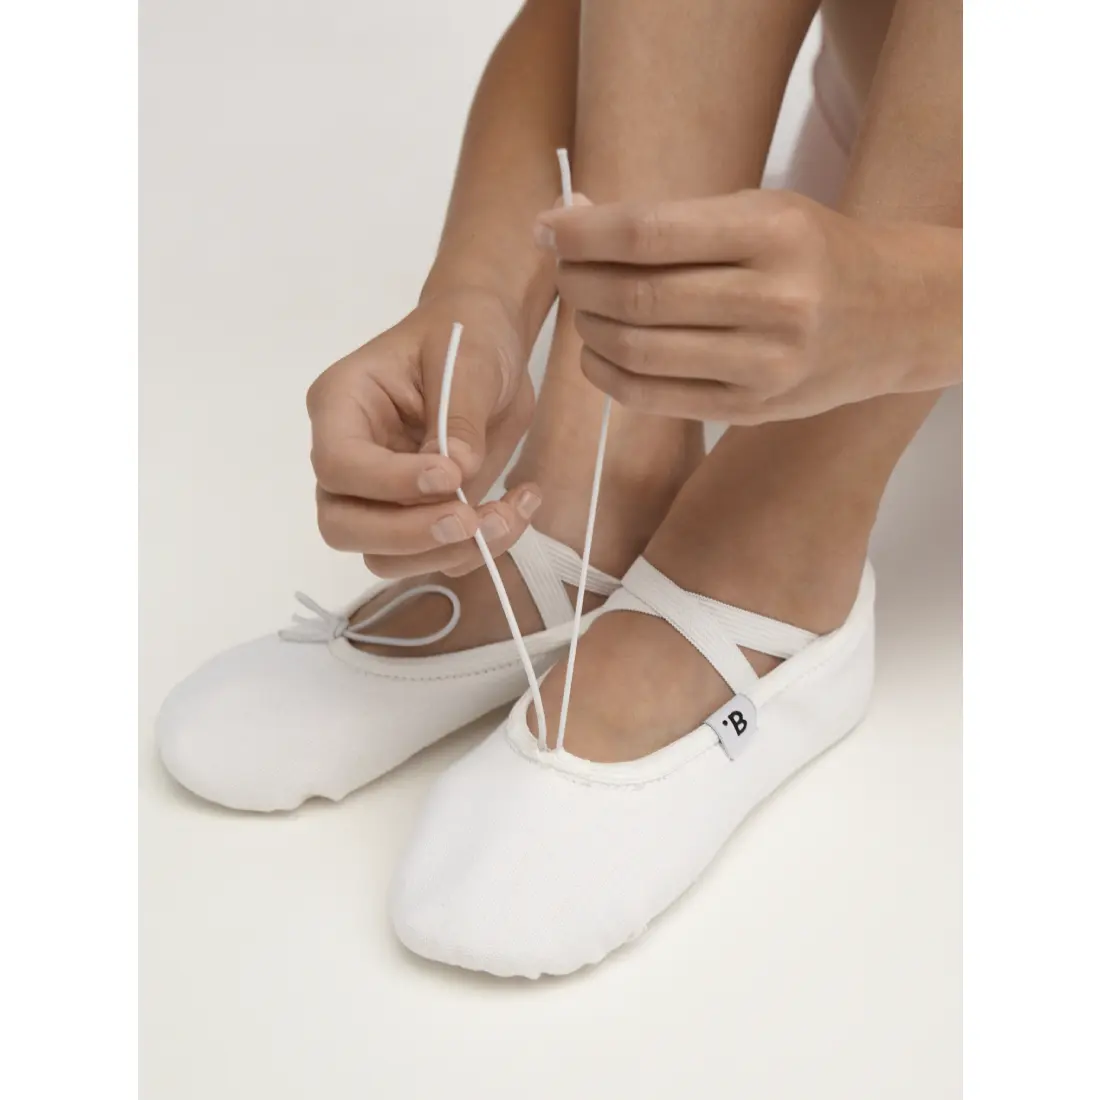 Wholesale kids' sport shoes canvas soft dance wear supplier dance class use ballet dancing shoes